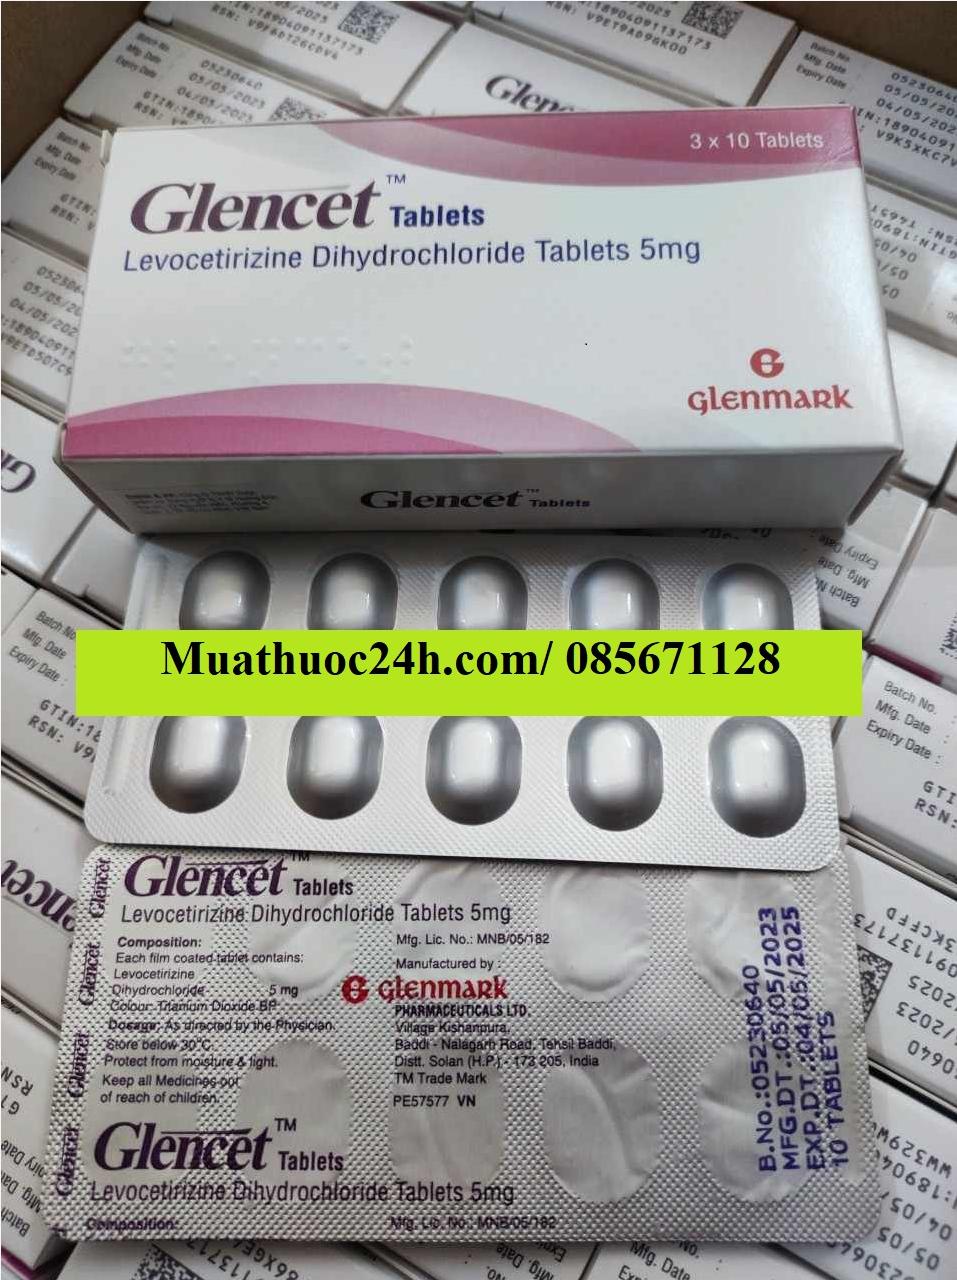 Thuốc Glencet Levocetirizine Dihydrochlorid 5mg giá bao nhiêu mua ở đâu?